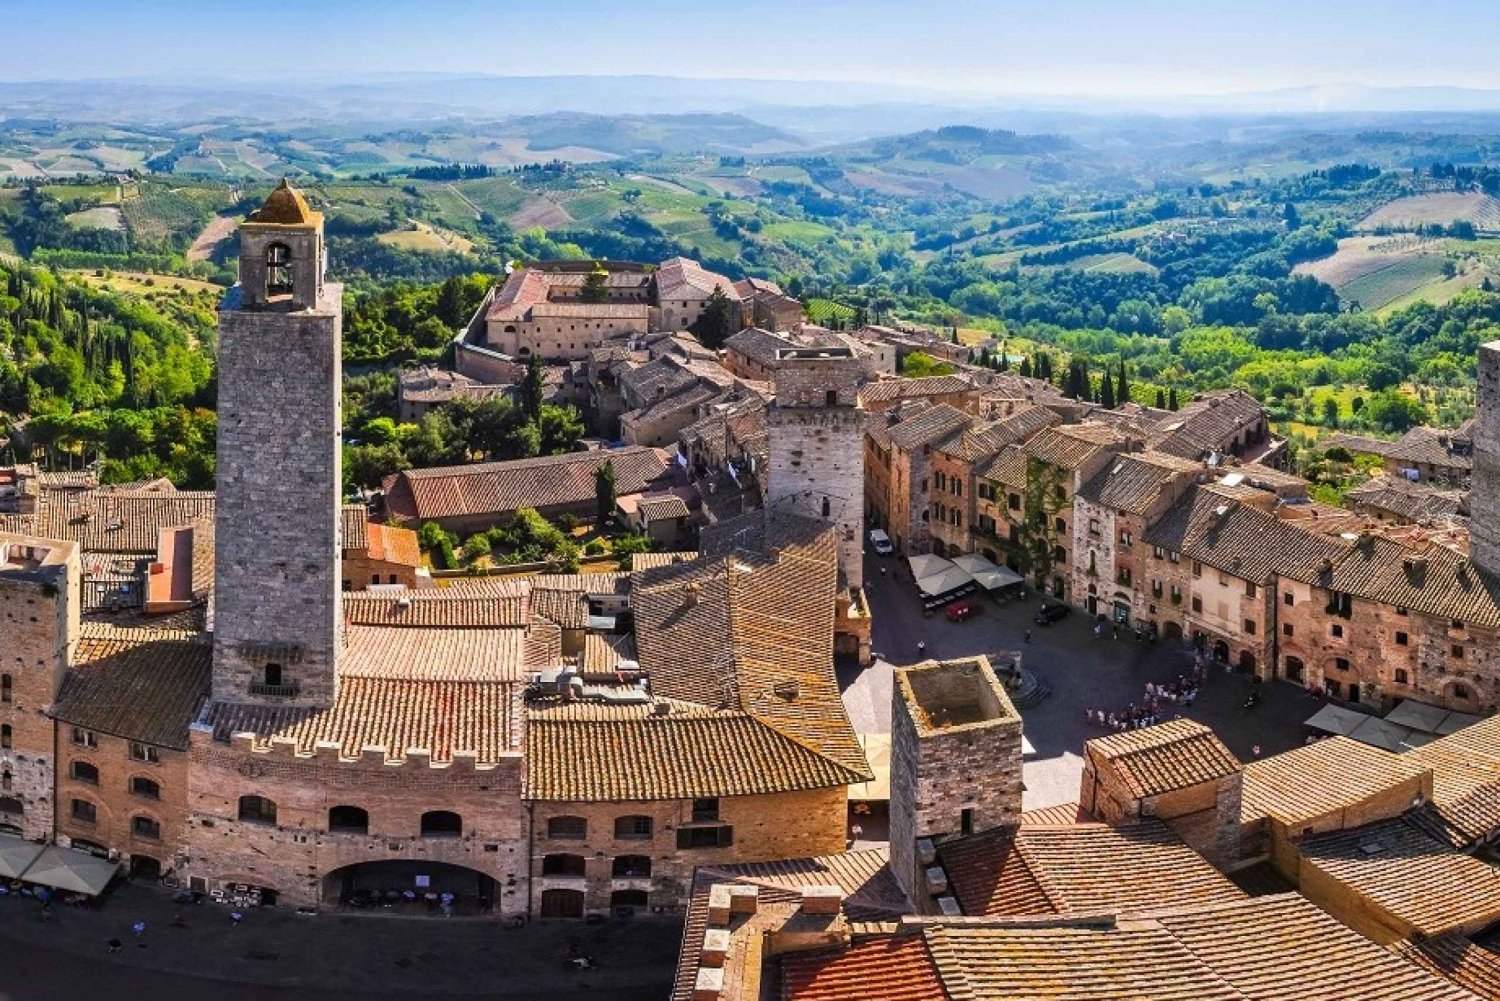 Toscane : excursion à Pise, Sienne, San Gimignano et Chianti